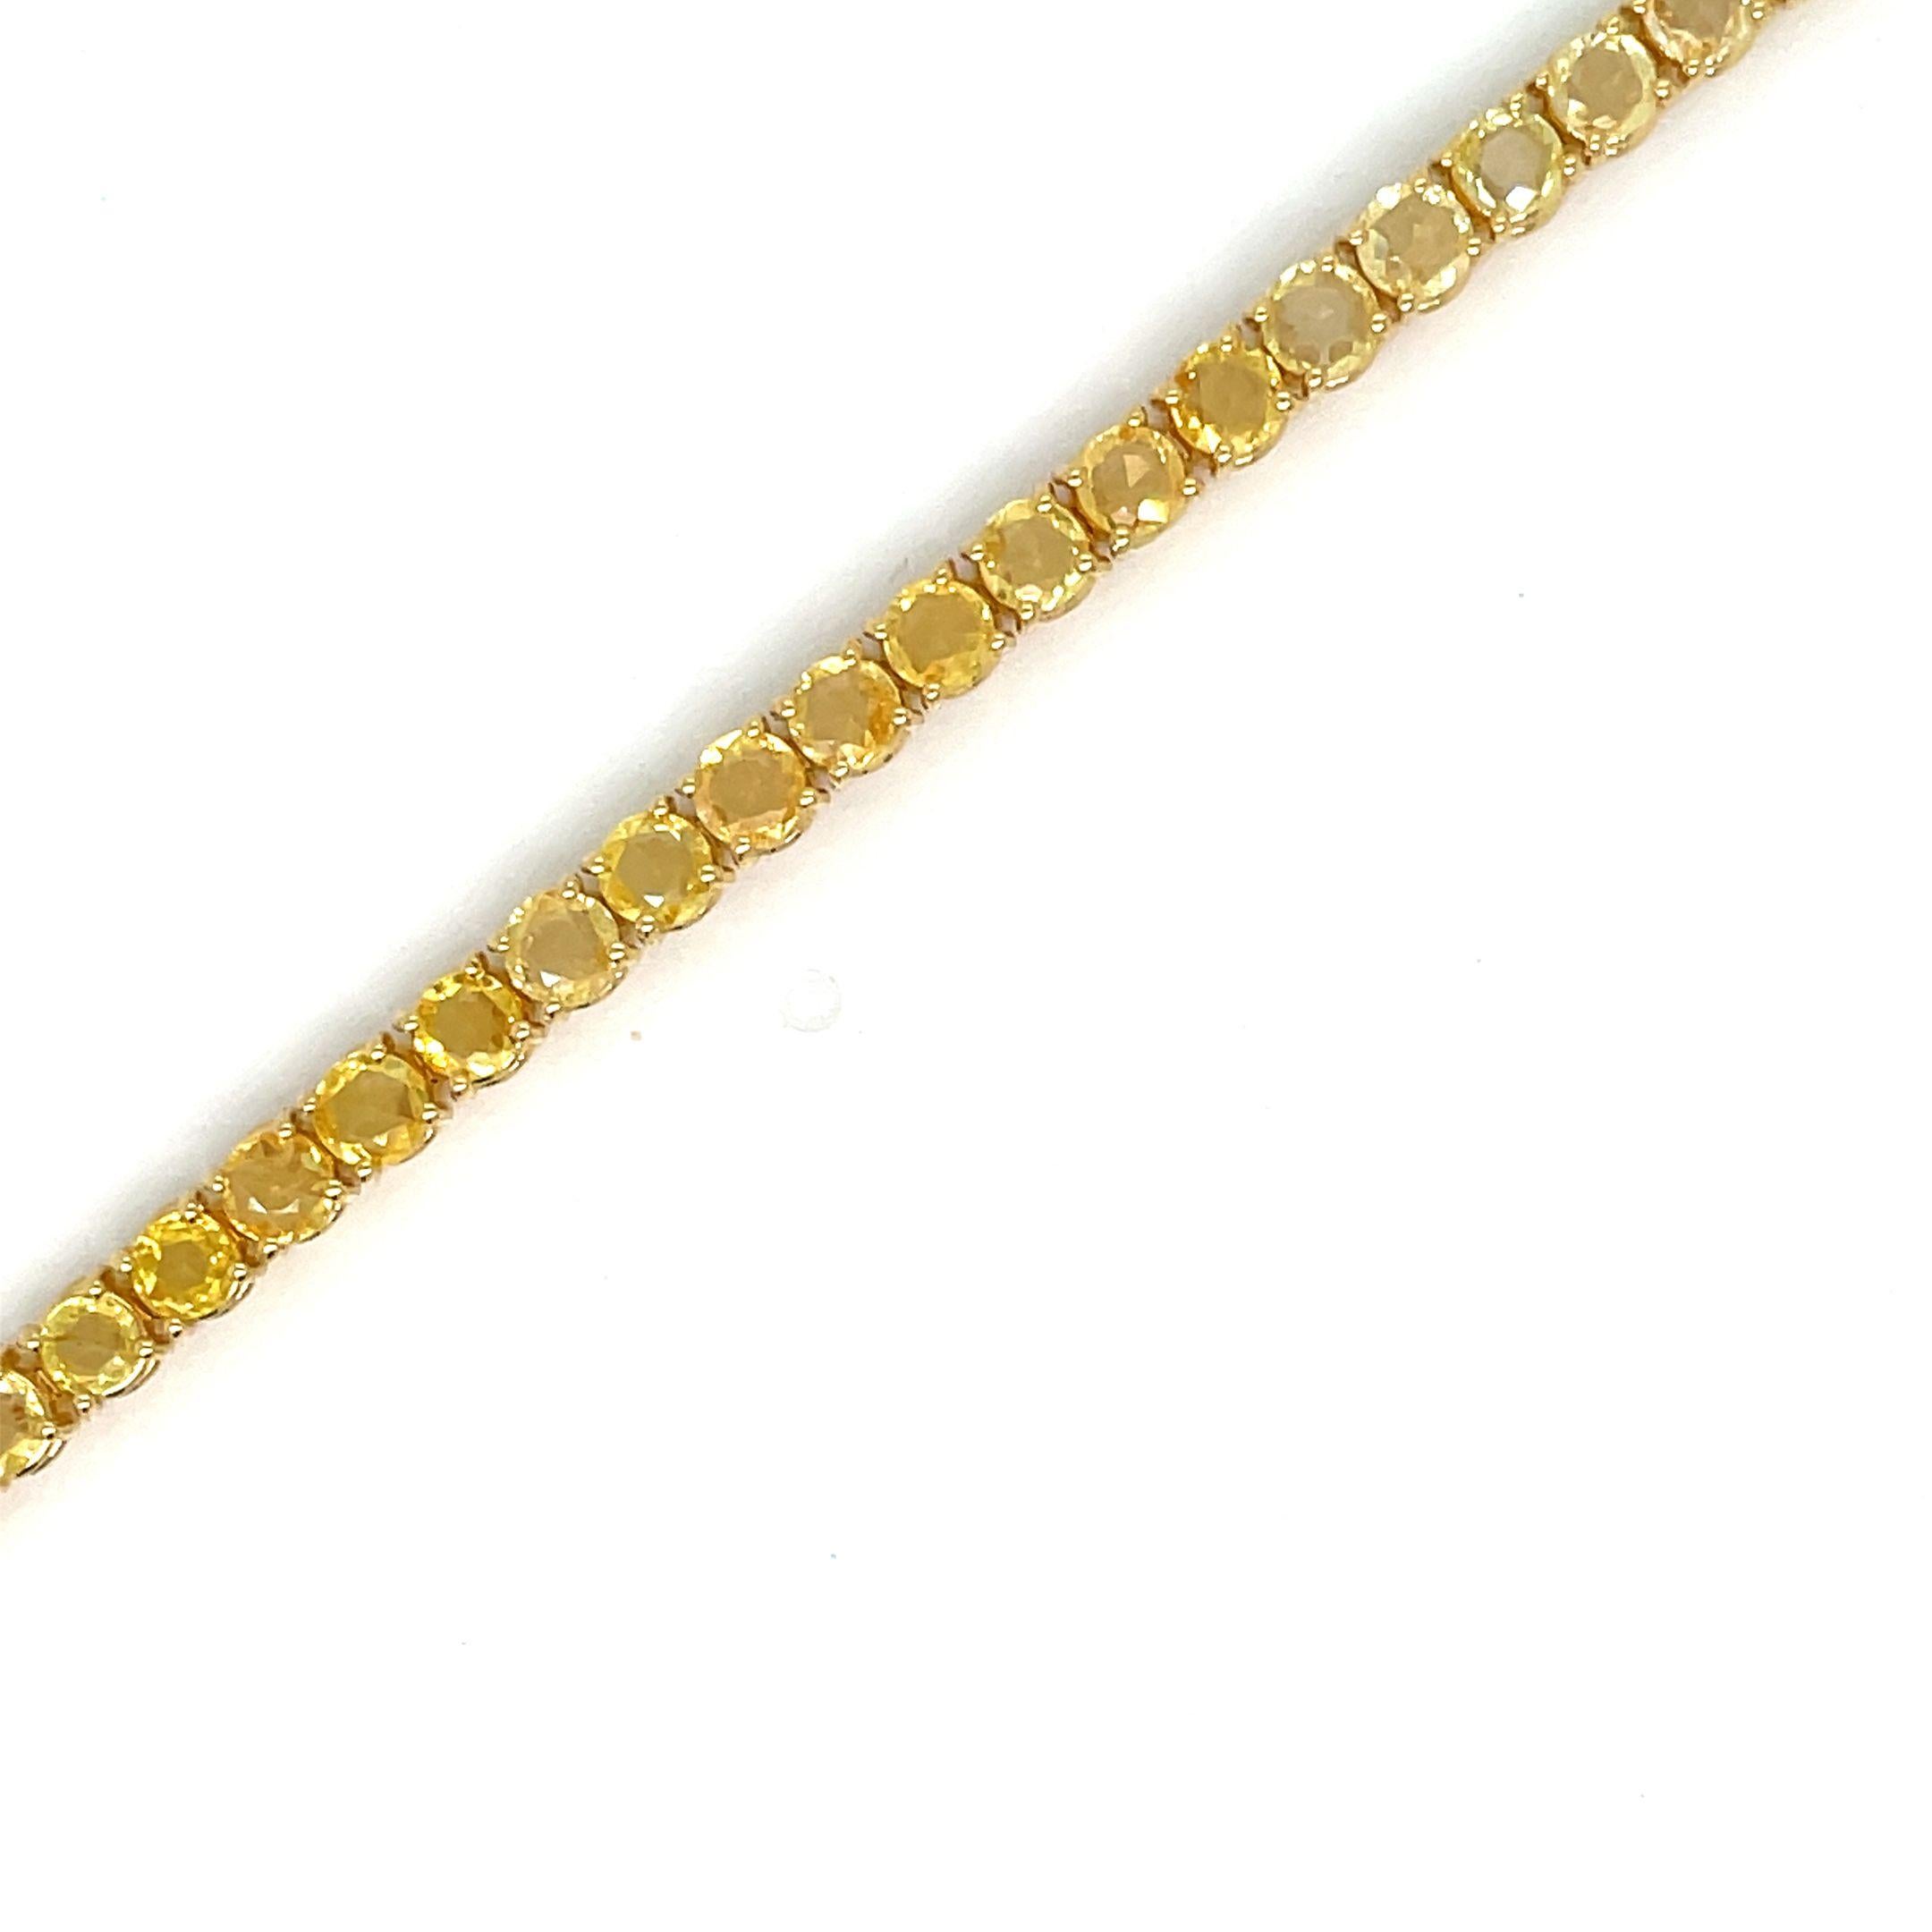 Fabelhaftes, brandneues Armband aus massivem 9-karätigem Gelbgold, besetzt mit 8,60 Karat gelben Saphiren im Rosenschliff mit einem Gewicht von je 0,18 Karat (3,2 mm).
Dieses Stück wird in unseren Labors entworfen und hergestellt, dank alter